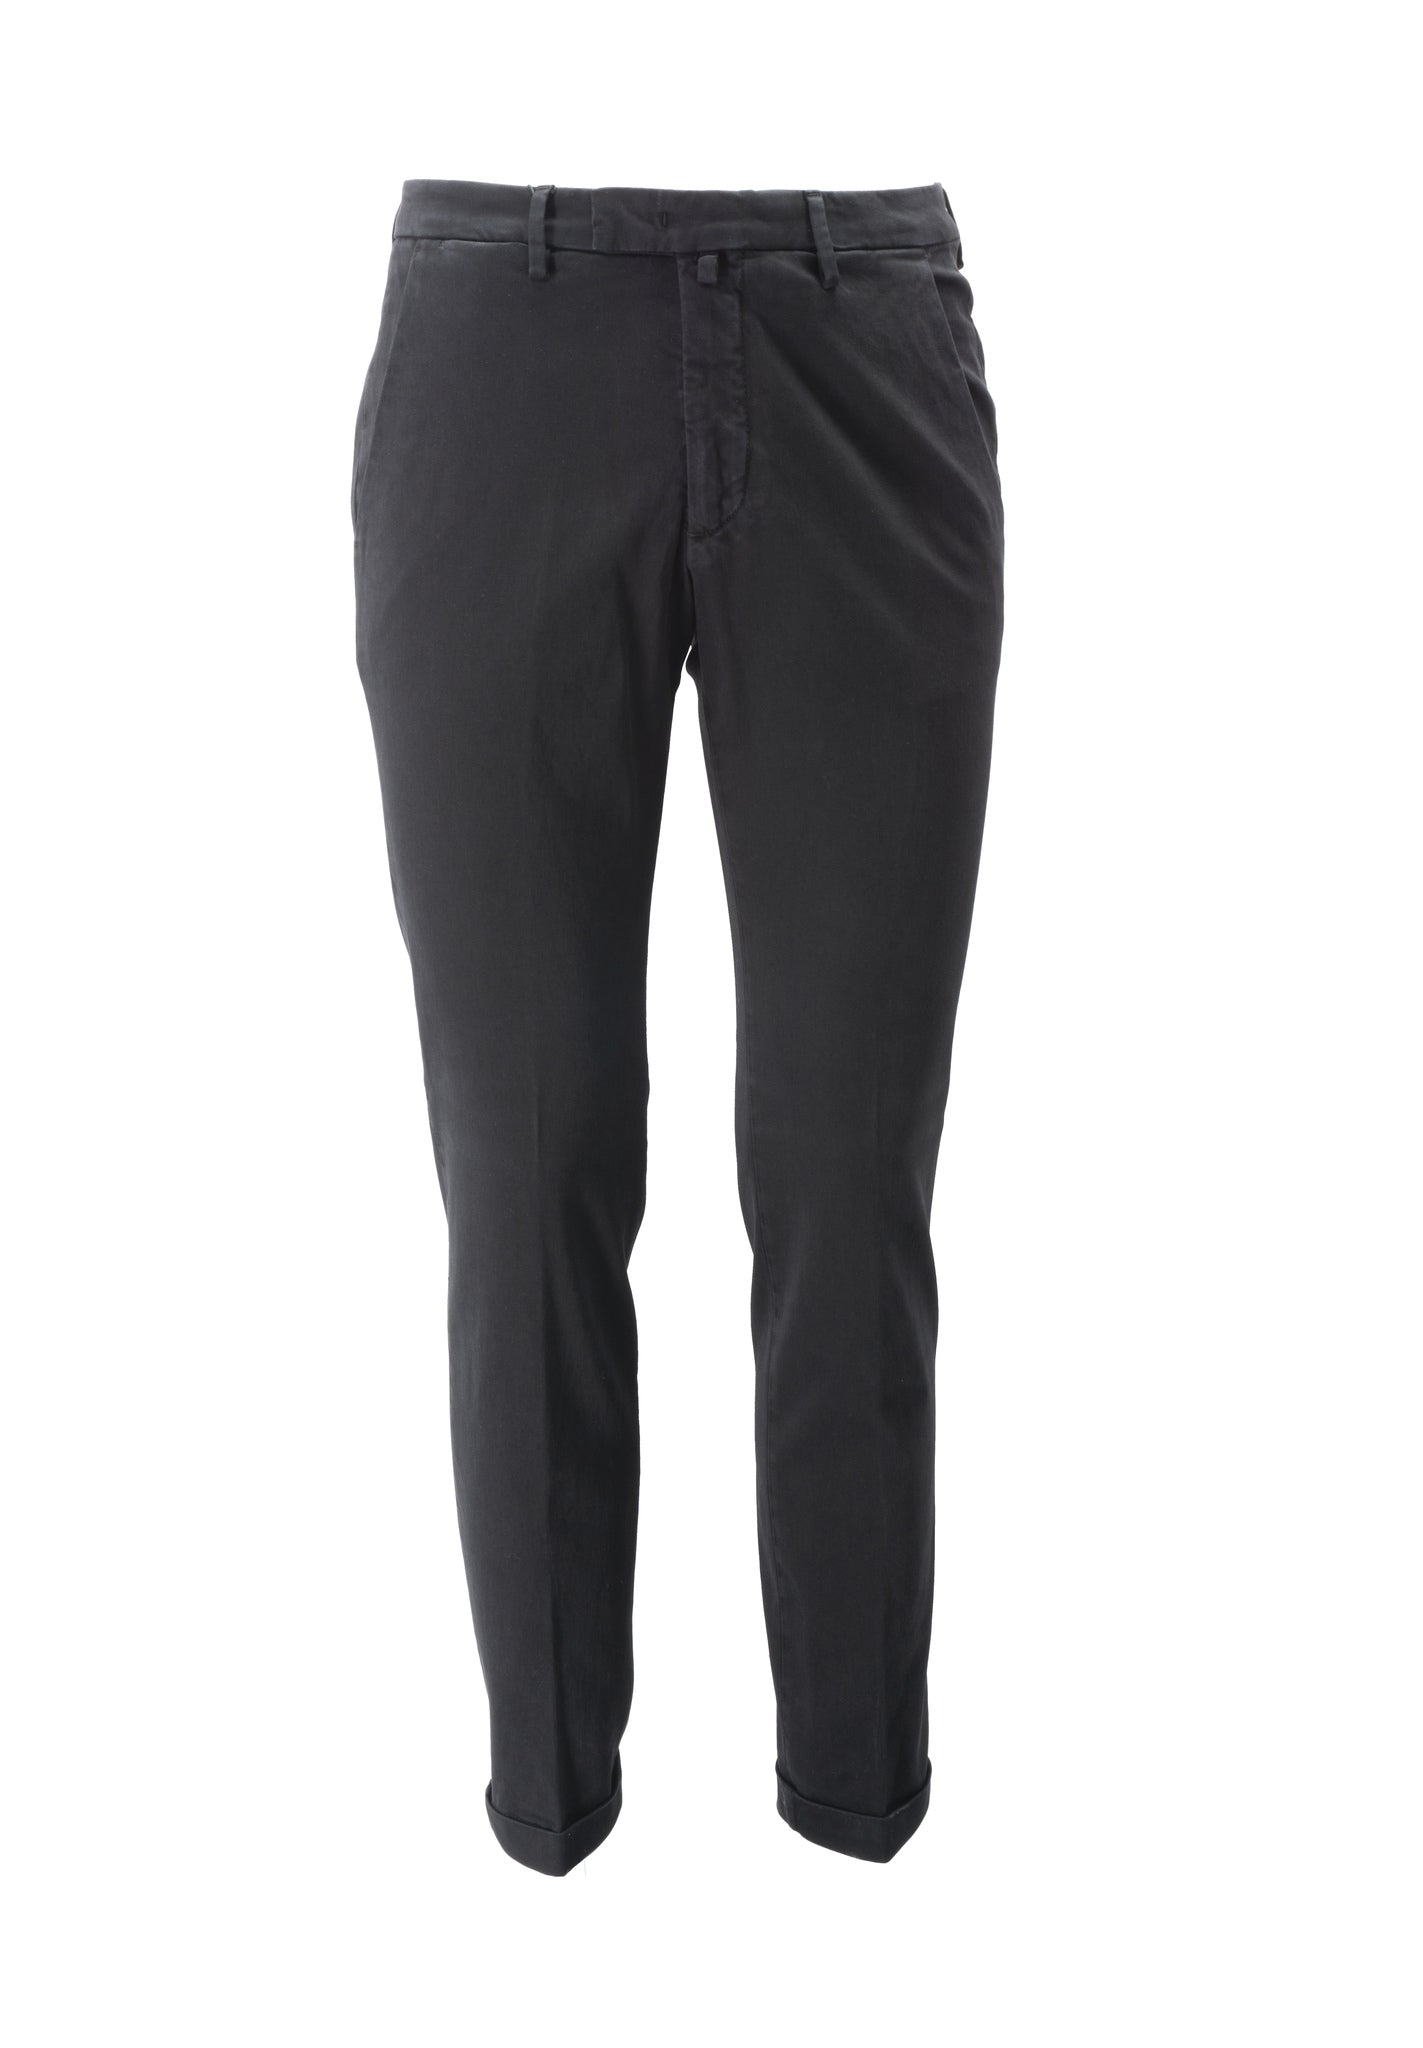 Pantalone Tasca America in Raso / Nero - Ideal Moda